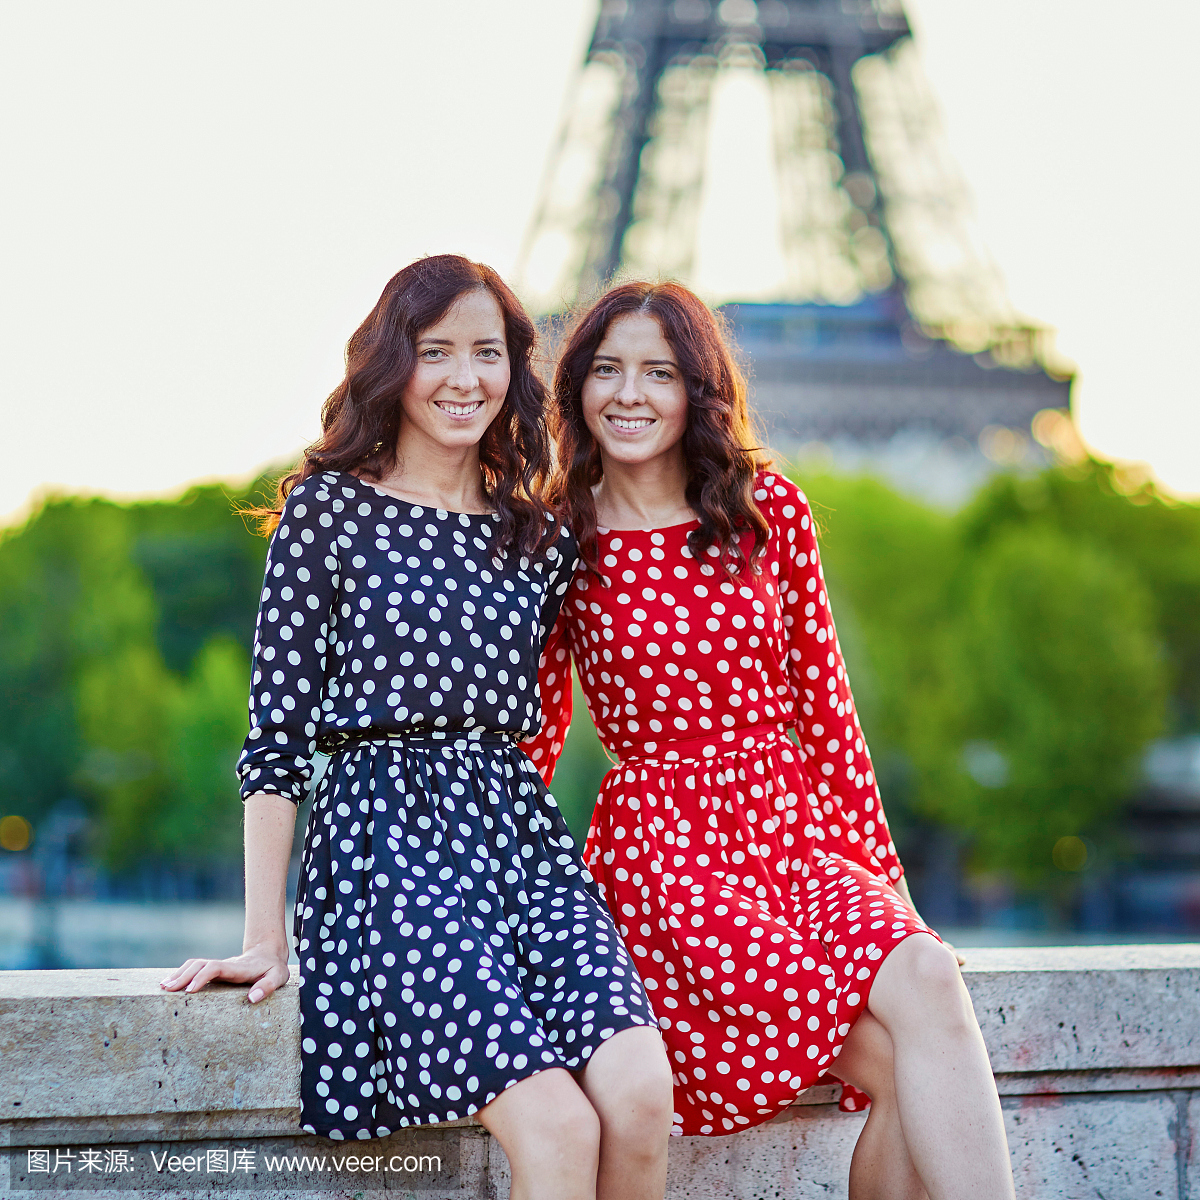 在法国巴黎埃菲尔铁塔附近的双胞胎姐妹